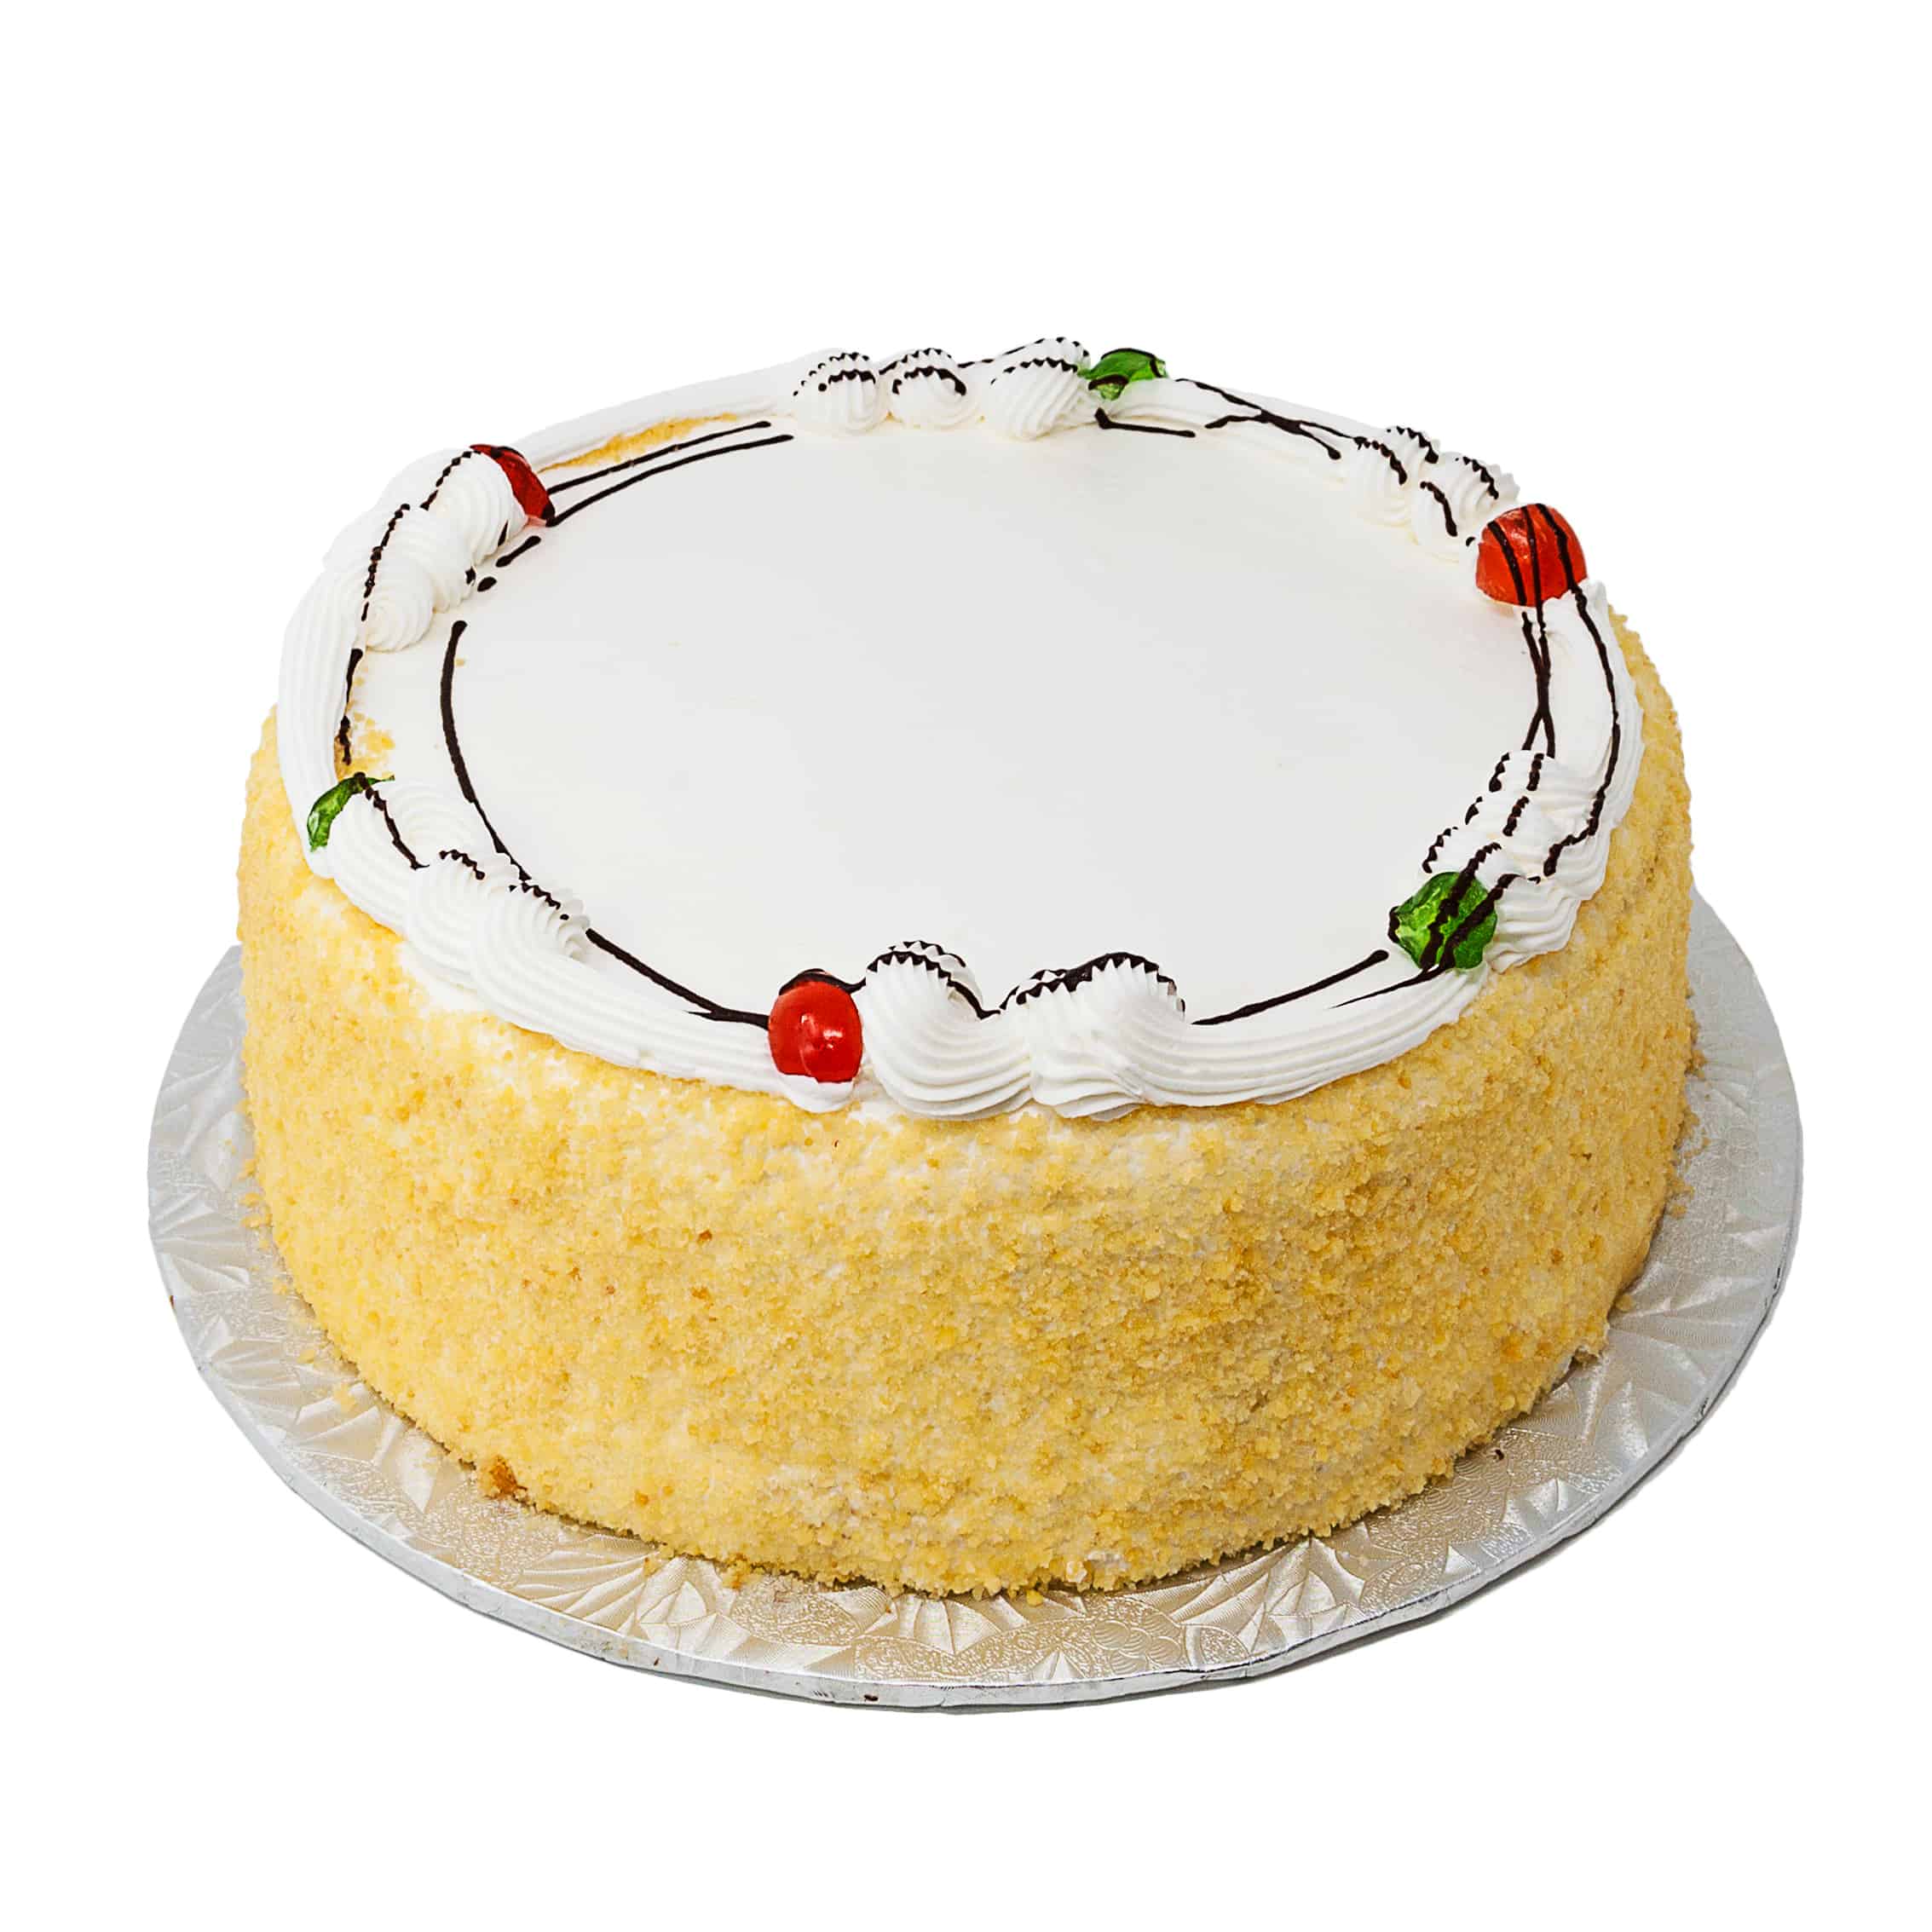 Sweet Art by Lucila -Heaven in a cake! | Cake recipes, Rum cake recipe, Rum  cake